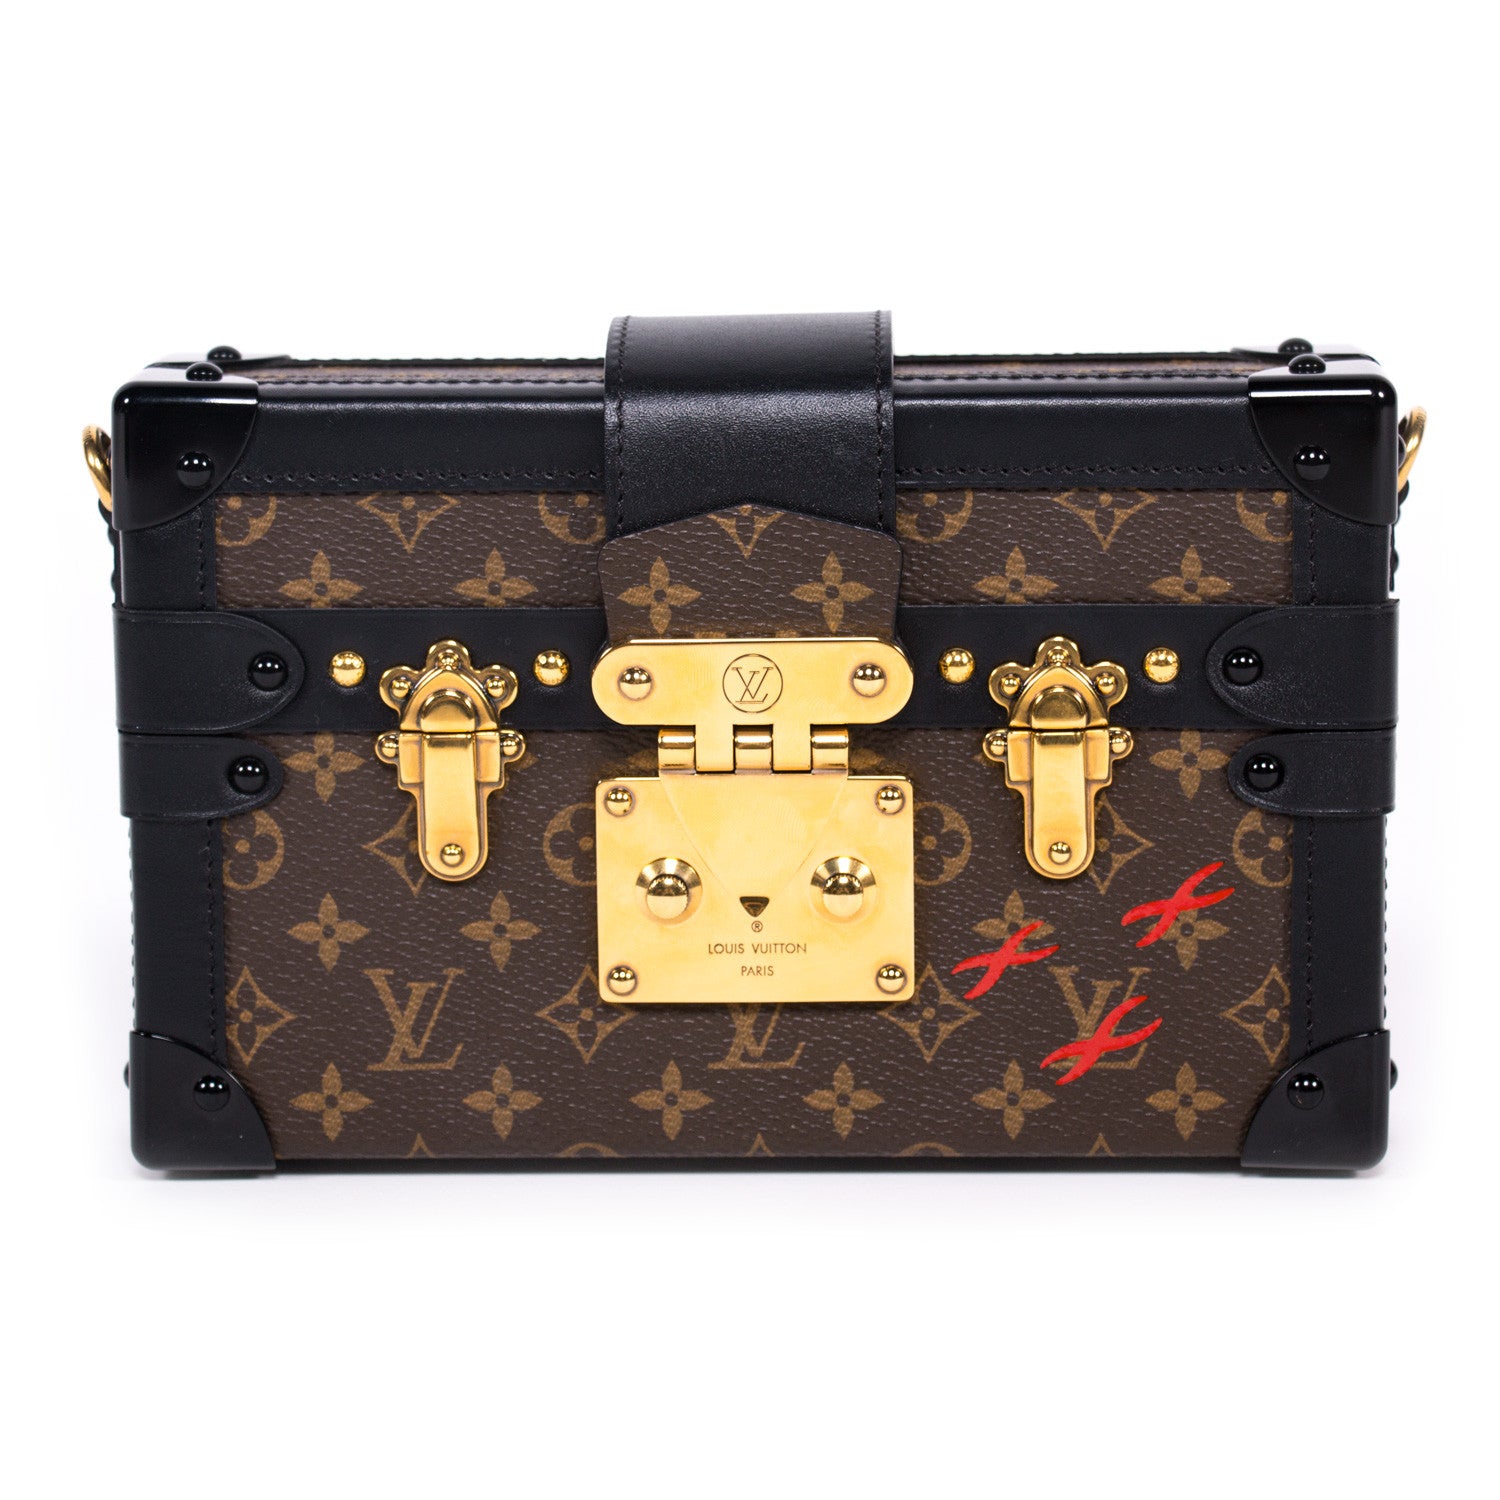 Louis Vuitton Pink & Black Epi Electrique Leather Petite Malle Bag., Lot  #58031